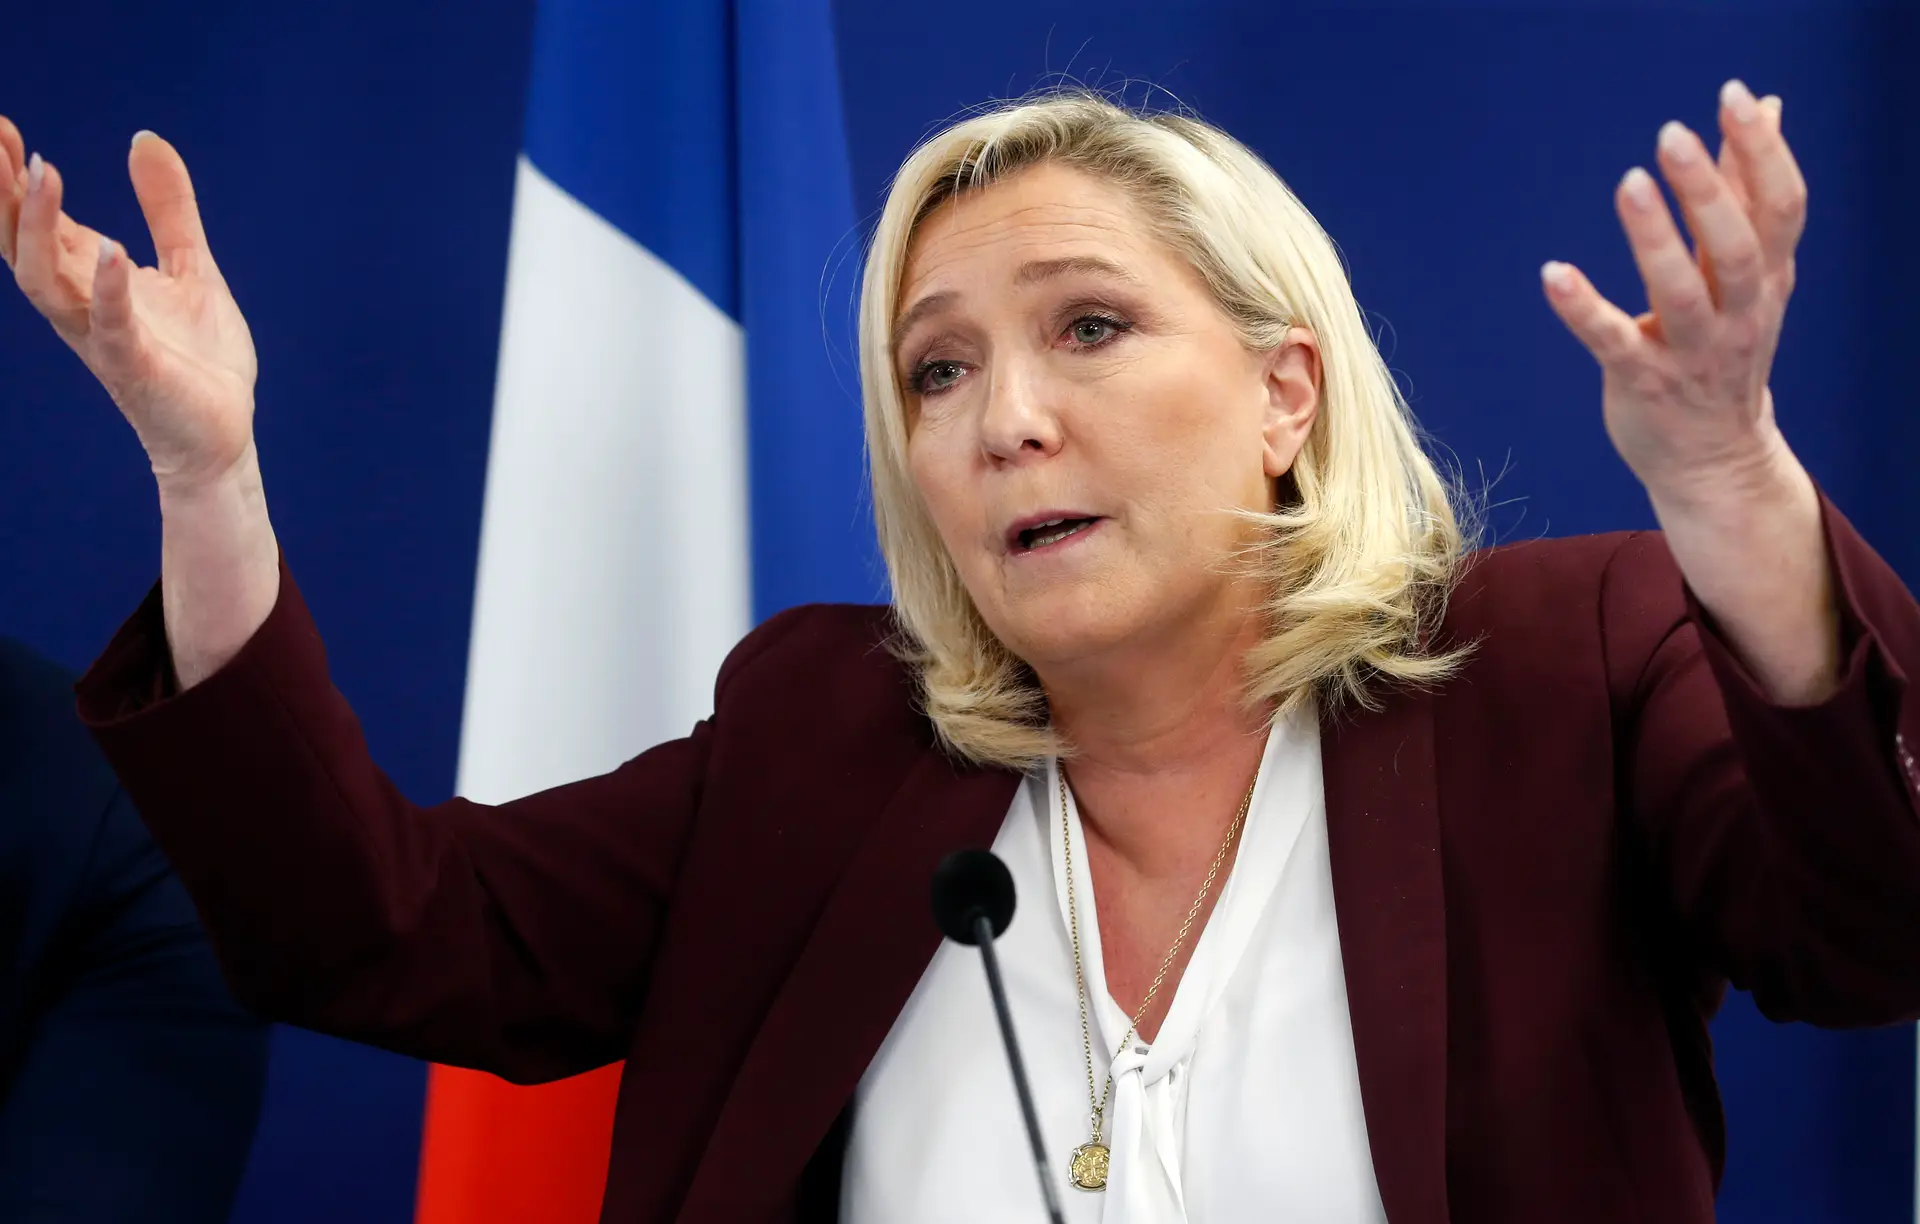 Eleições em Itália: Le Pen contente, Macron preocupado, UE não comenta, Kremlin quer “relação construtiva”